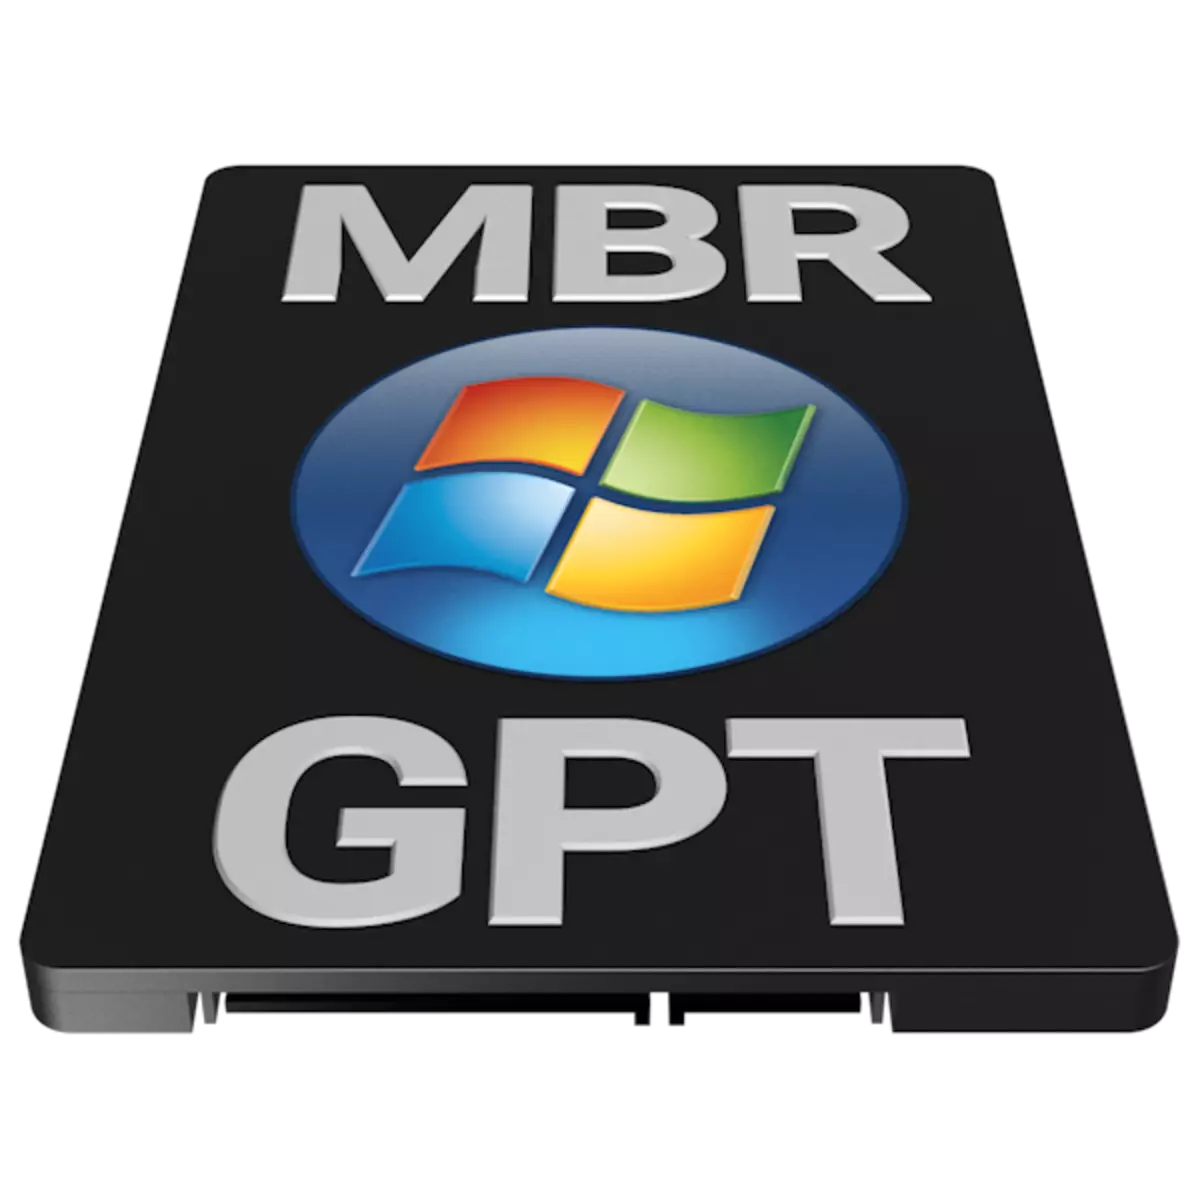 GPT أو MBR ويندوز 7 ماذا تختار